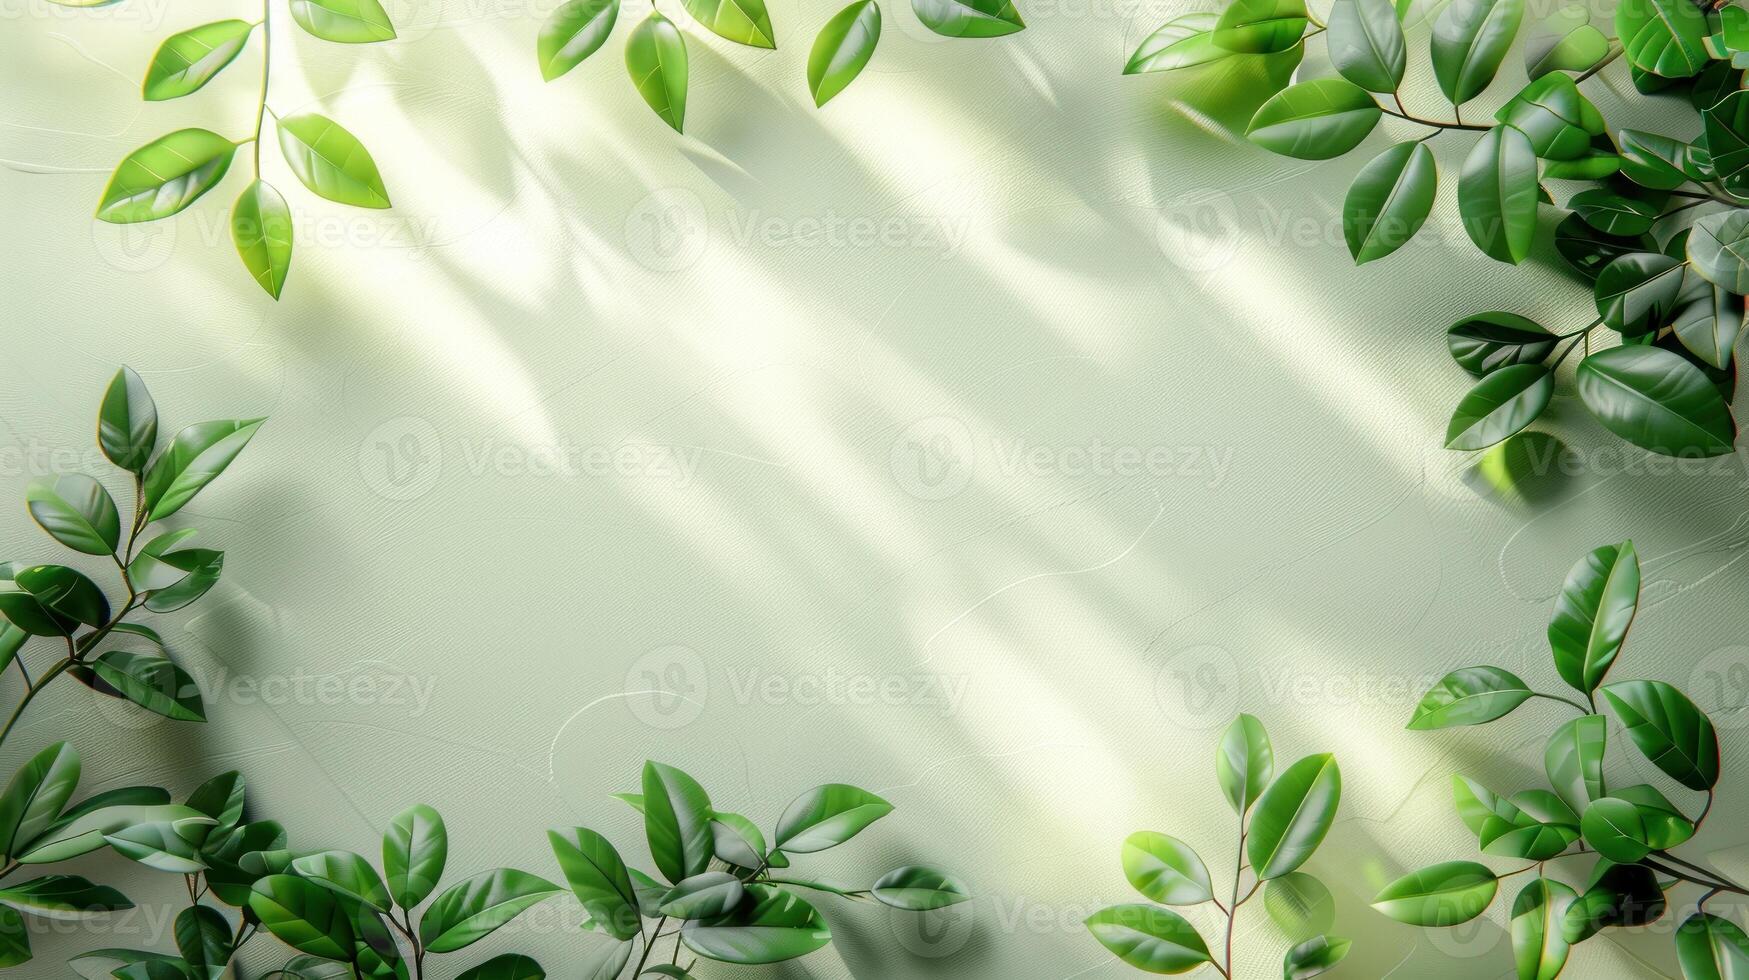 zonlicht schijnt Aan groen bladeren tegen een wit muur foto